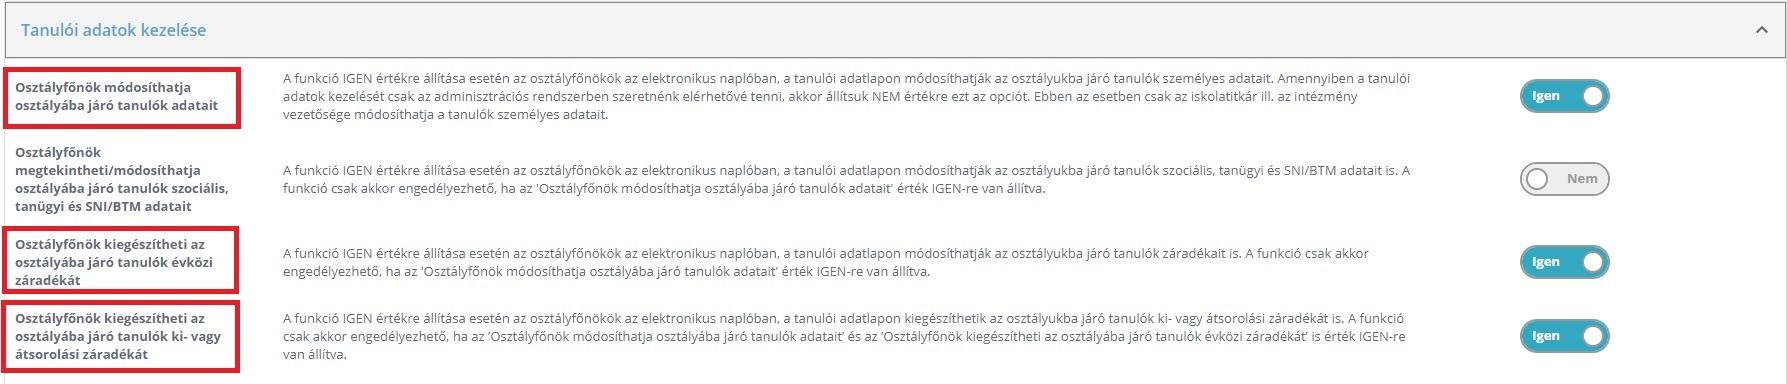 csúszóár-záradék angol magyar fordítás - taska-taskak.hu